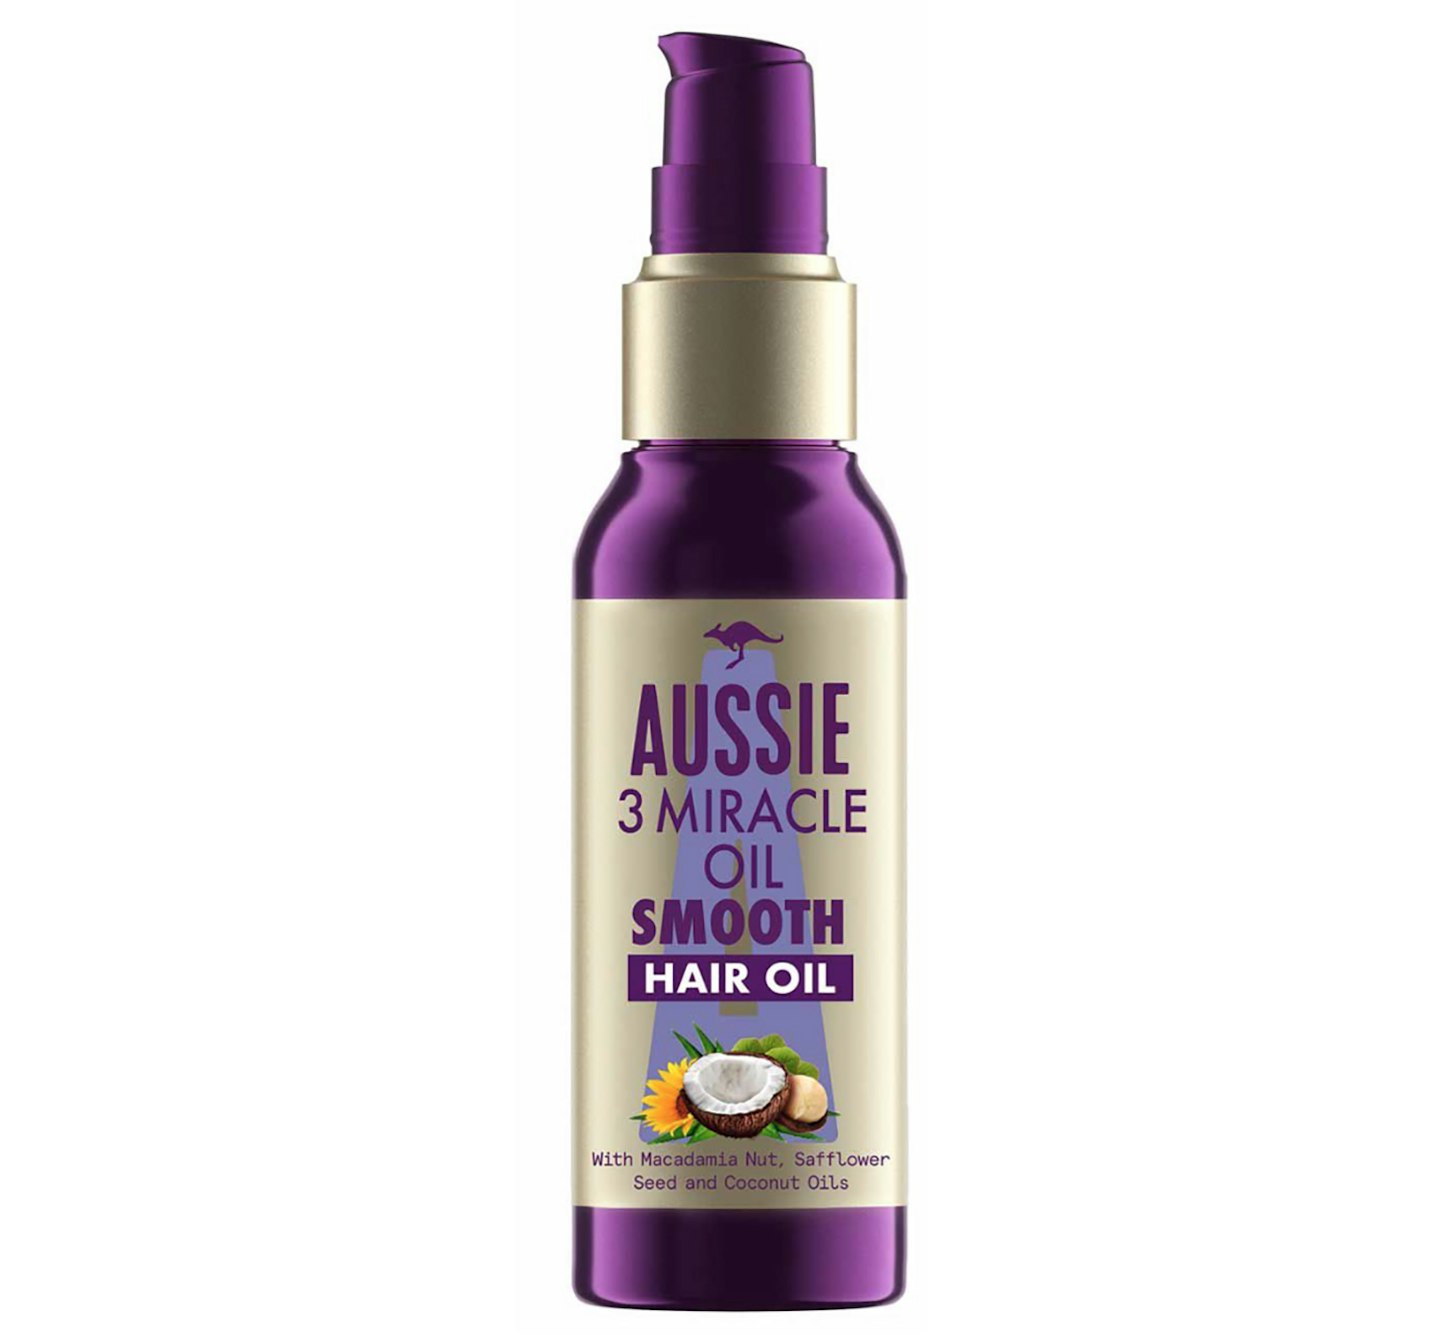 Aussie Smooth Hair Oil Lightweight Treatment, £9.99